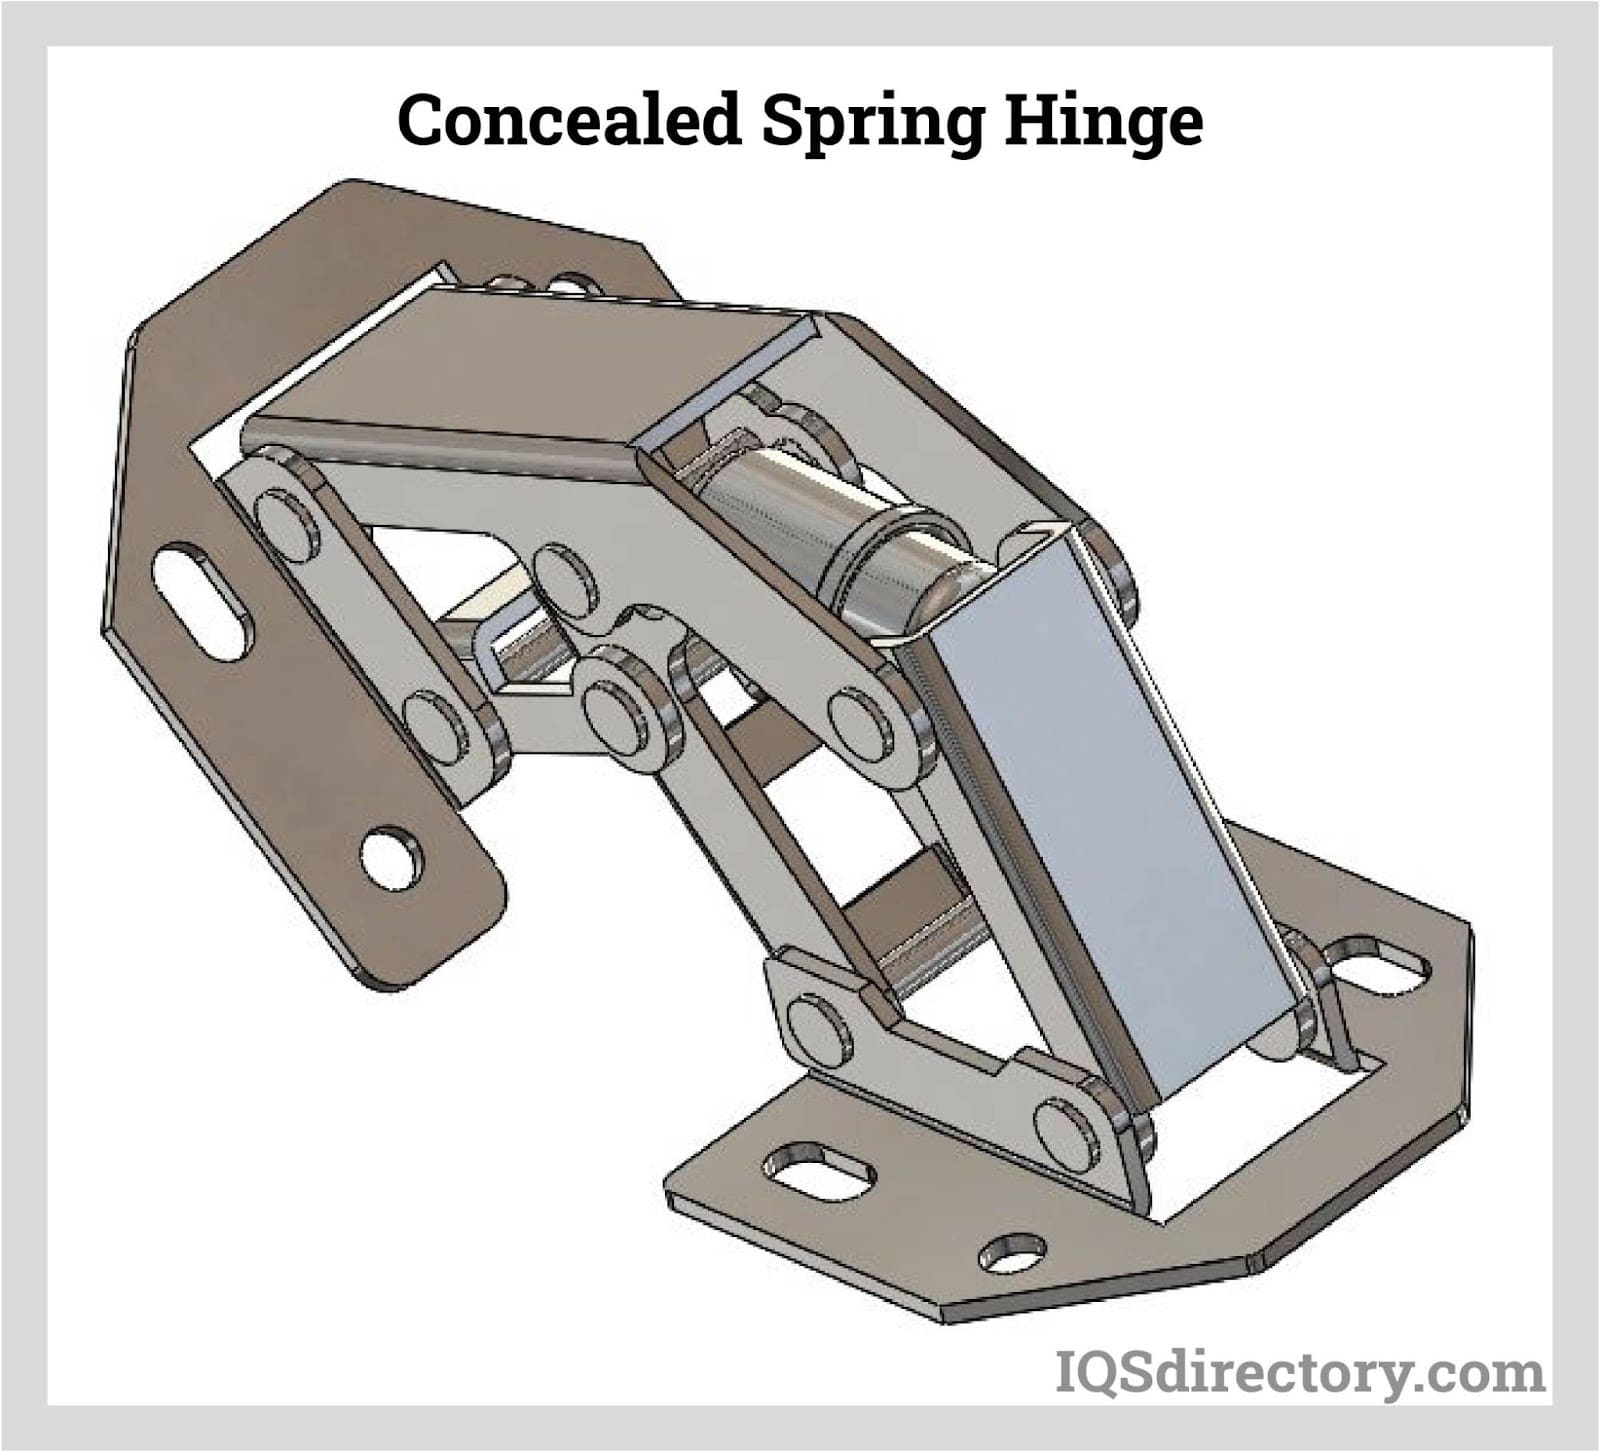 Concealed Spring Hinge